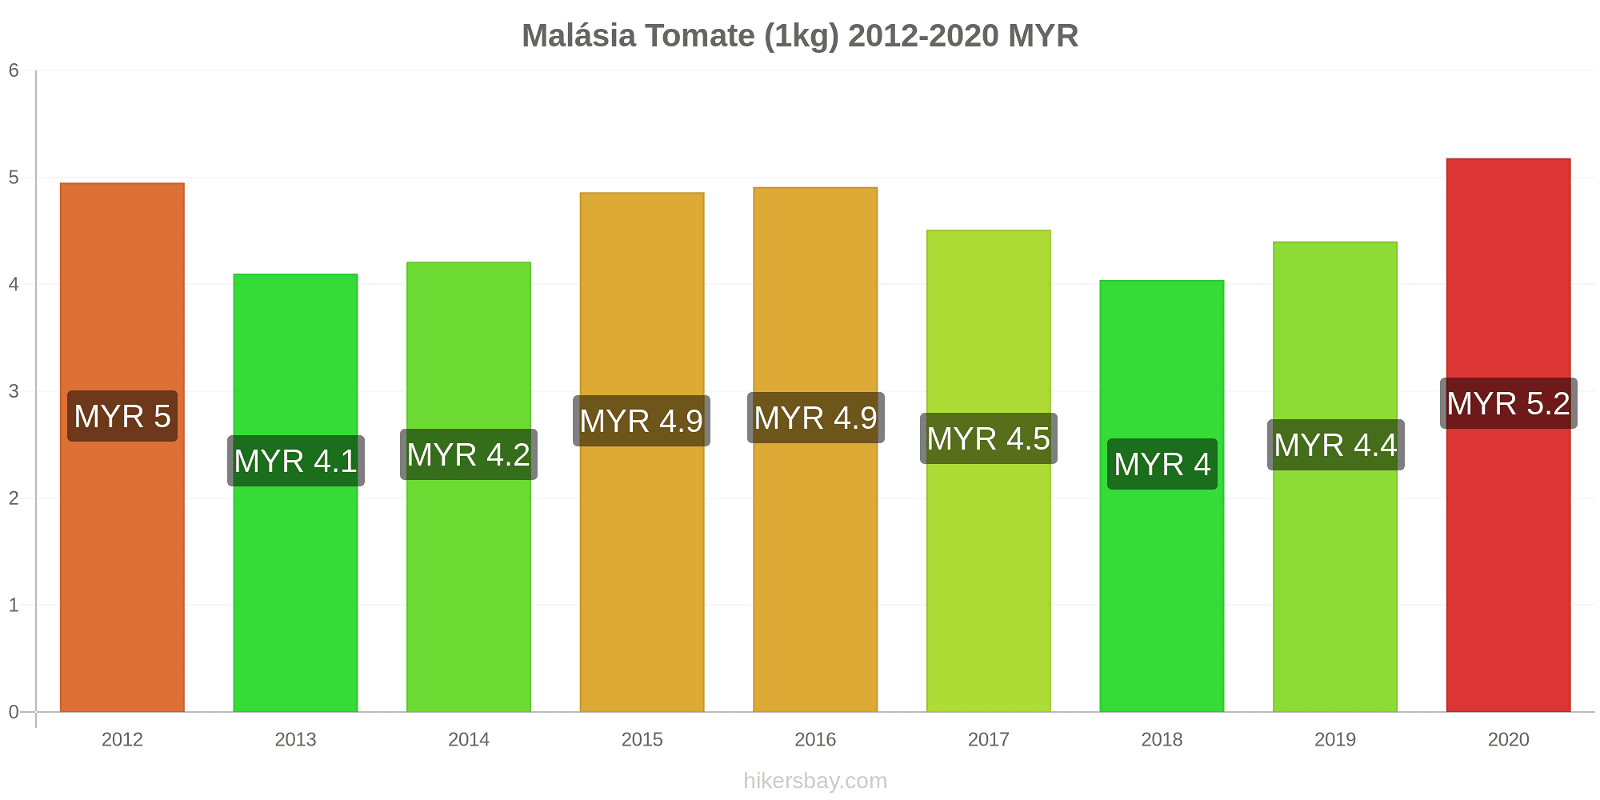 Malásia variação de preço Tomate (1kg) hikersbay.com